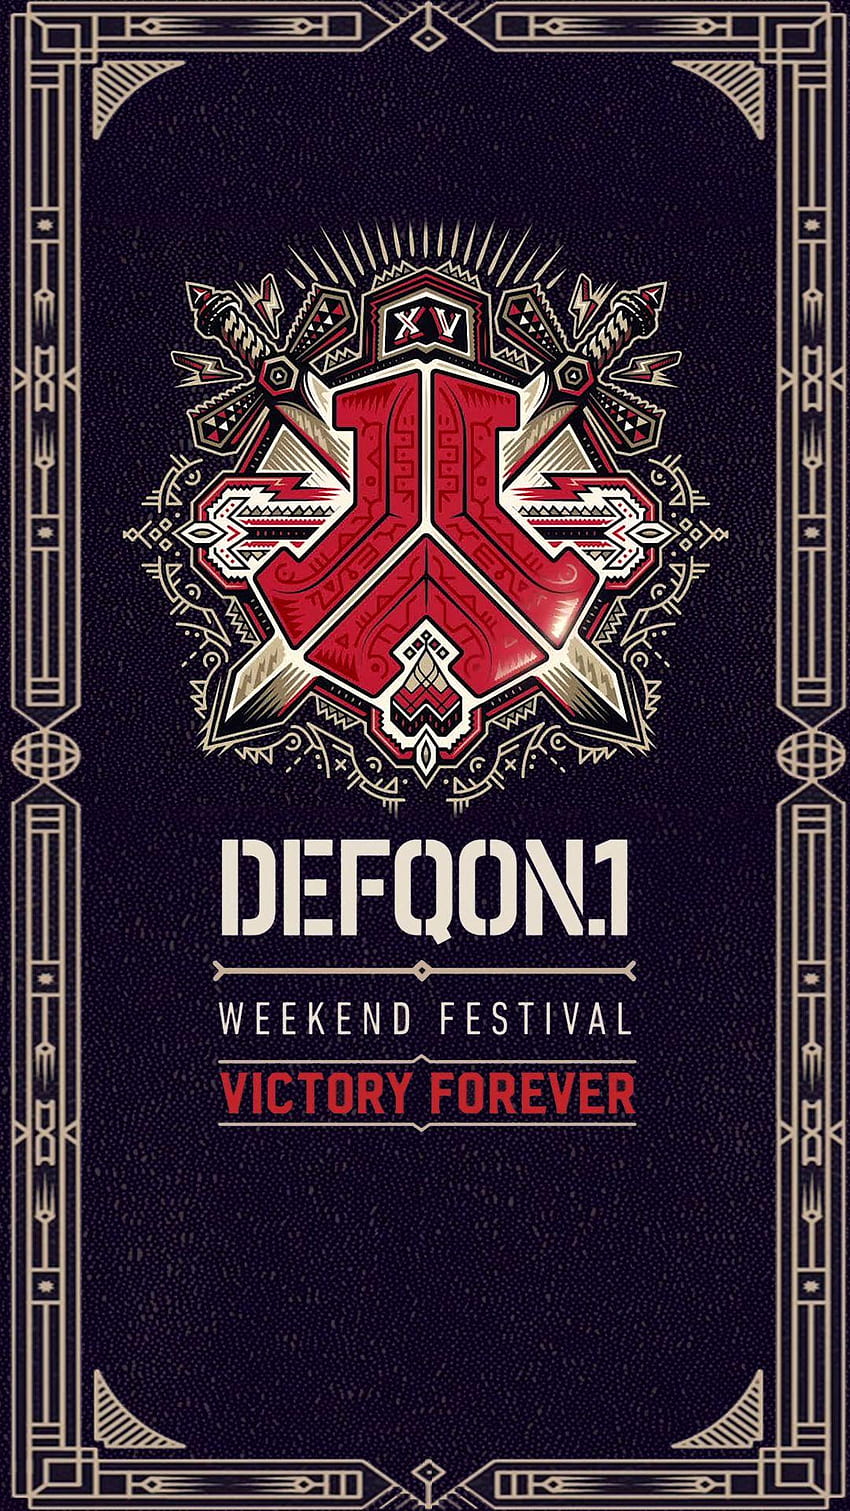 Defqon.1 Festival HD phone wallpaper